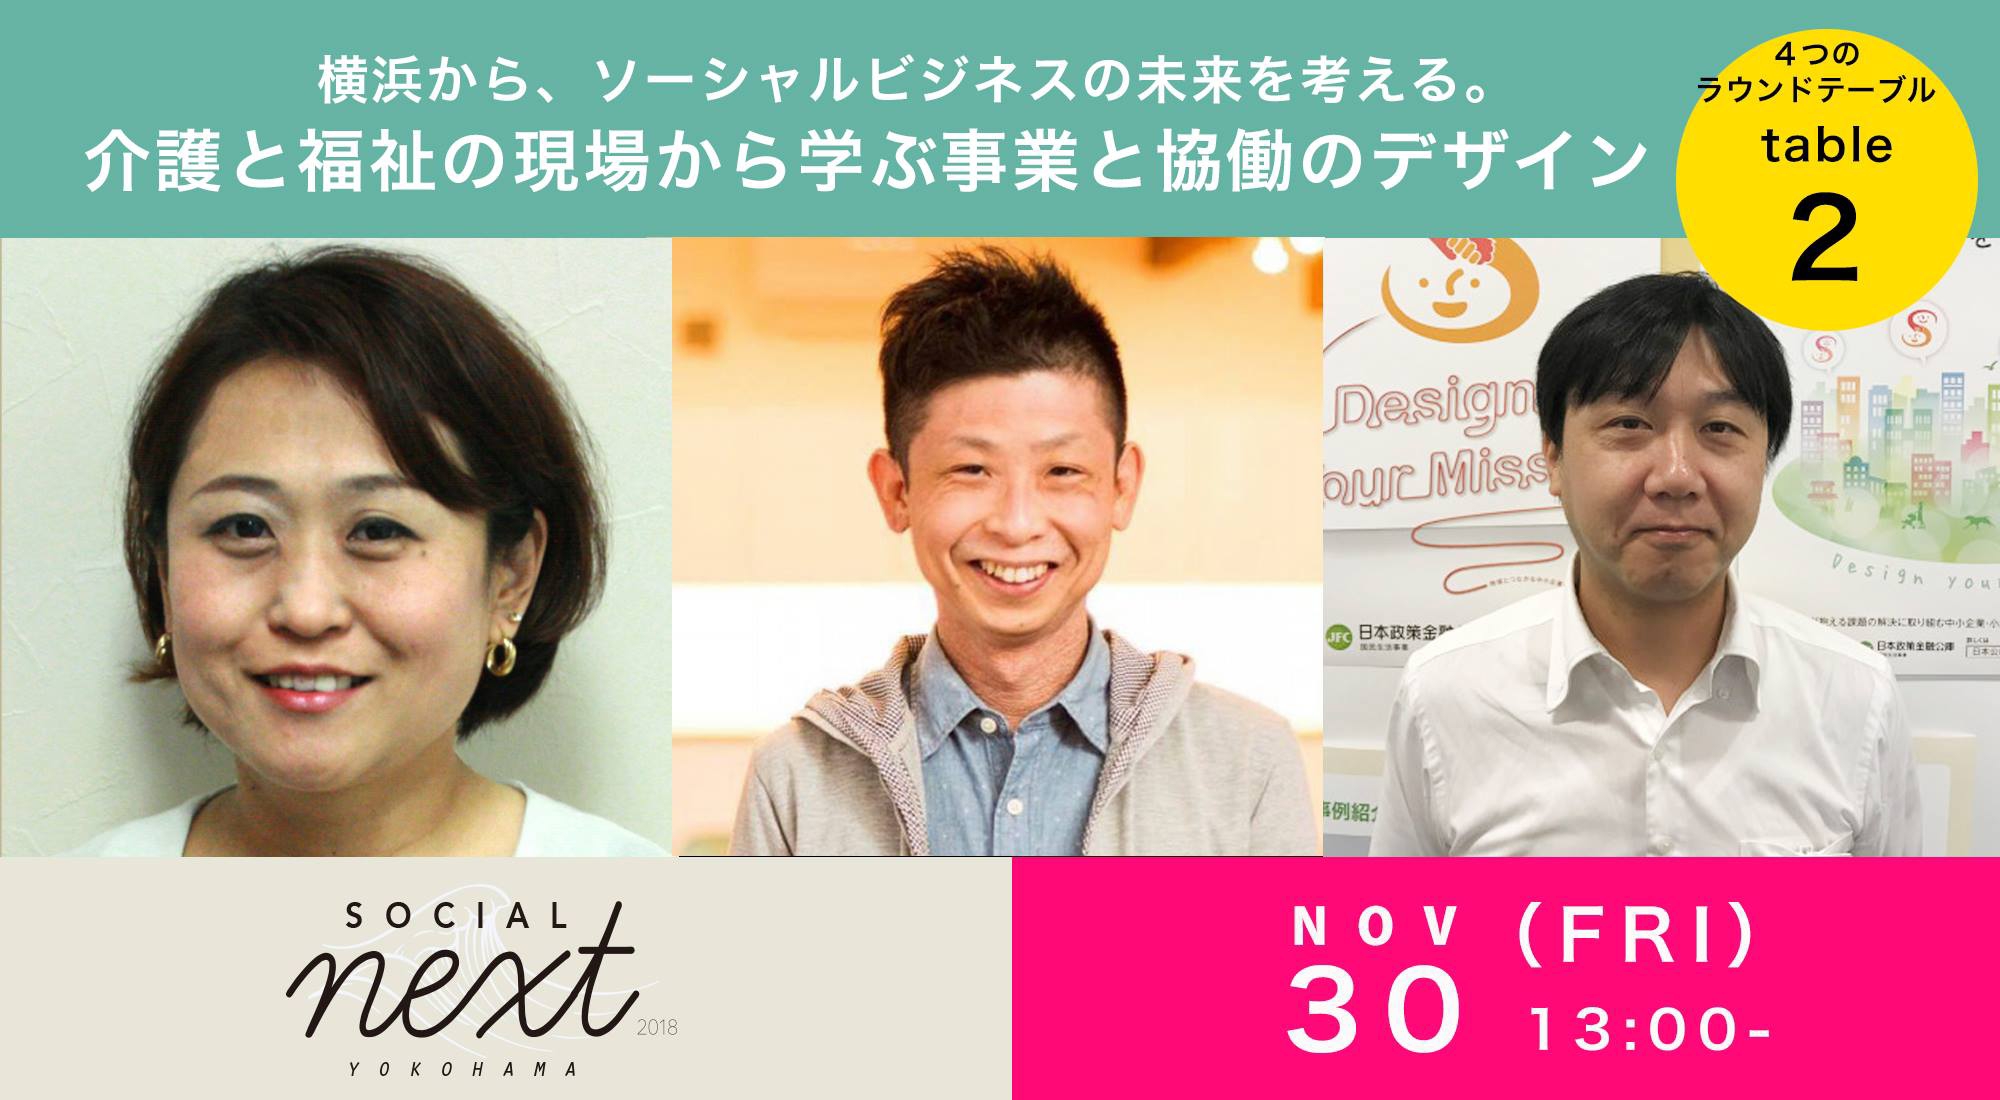 ラウンドテーブル 介護と福祉の現場から学ぶ事業と協働のデザイン をご紹介 Social Next Yokohama 18